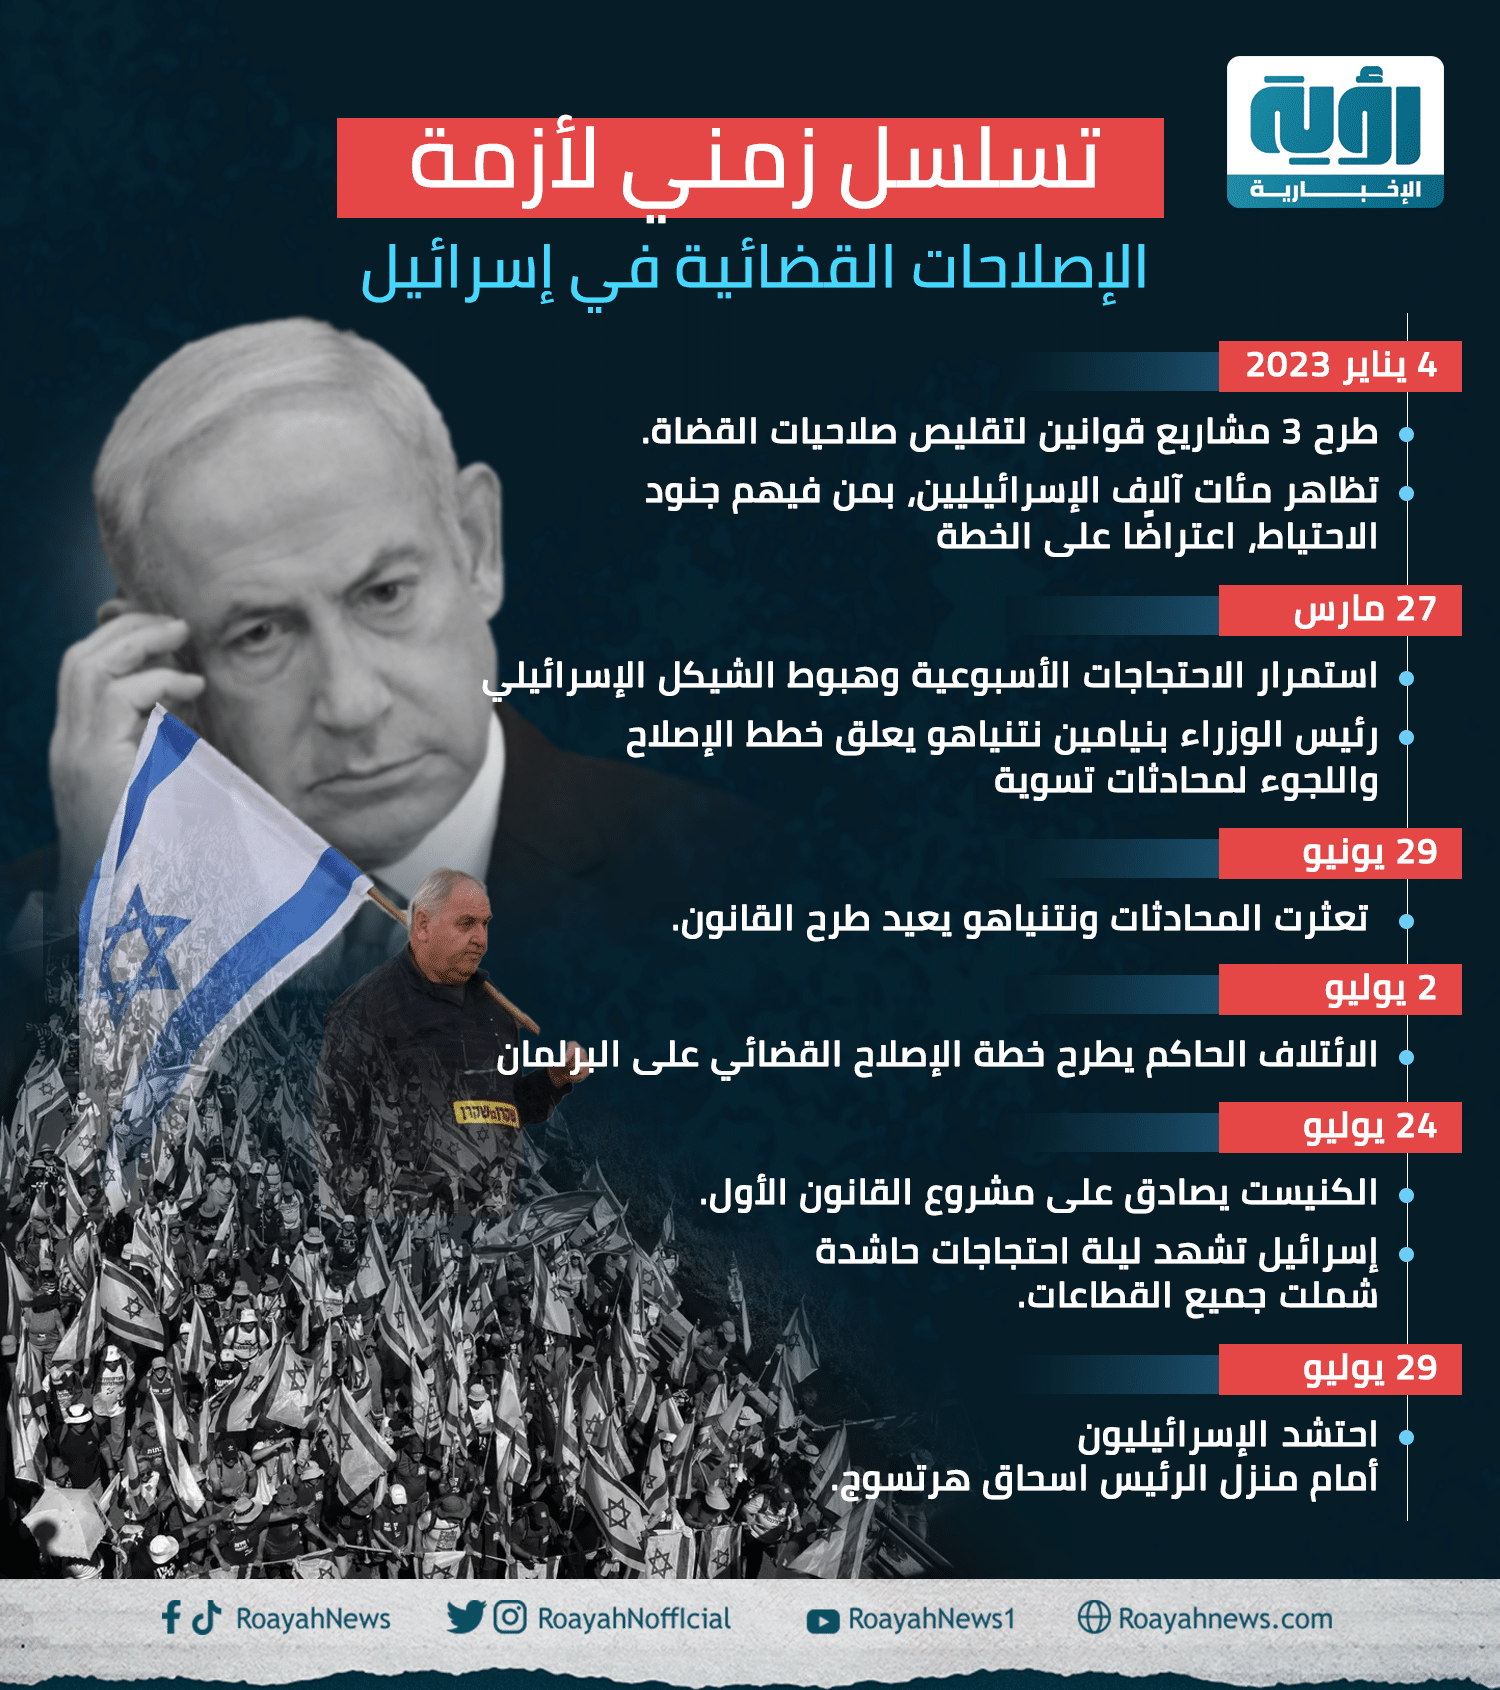 تسلسل زمني لأزمة الإصلاحات القضائية في إسرائيل 1 1